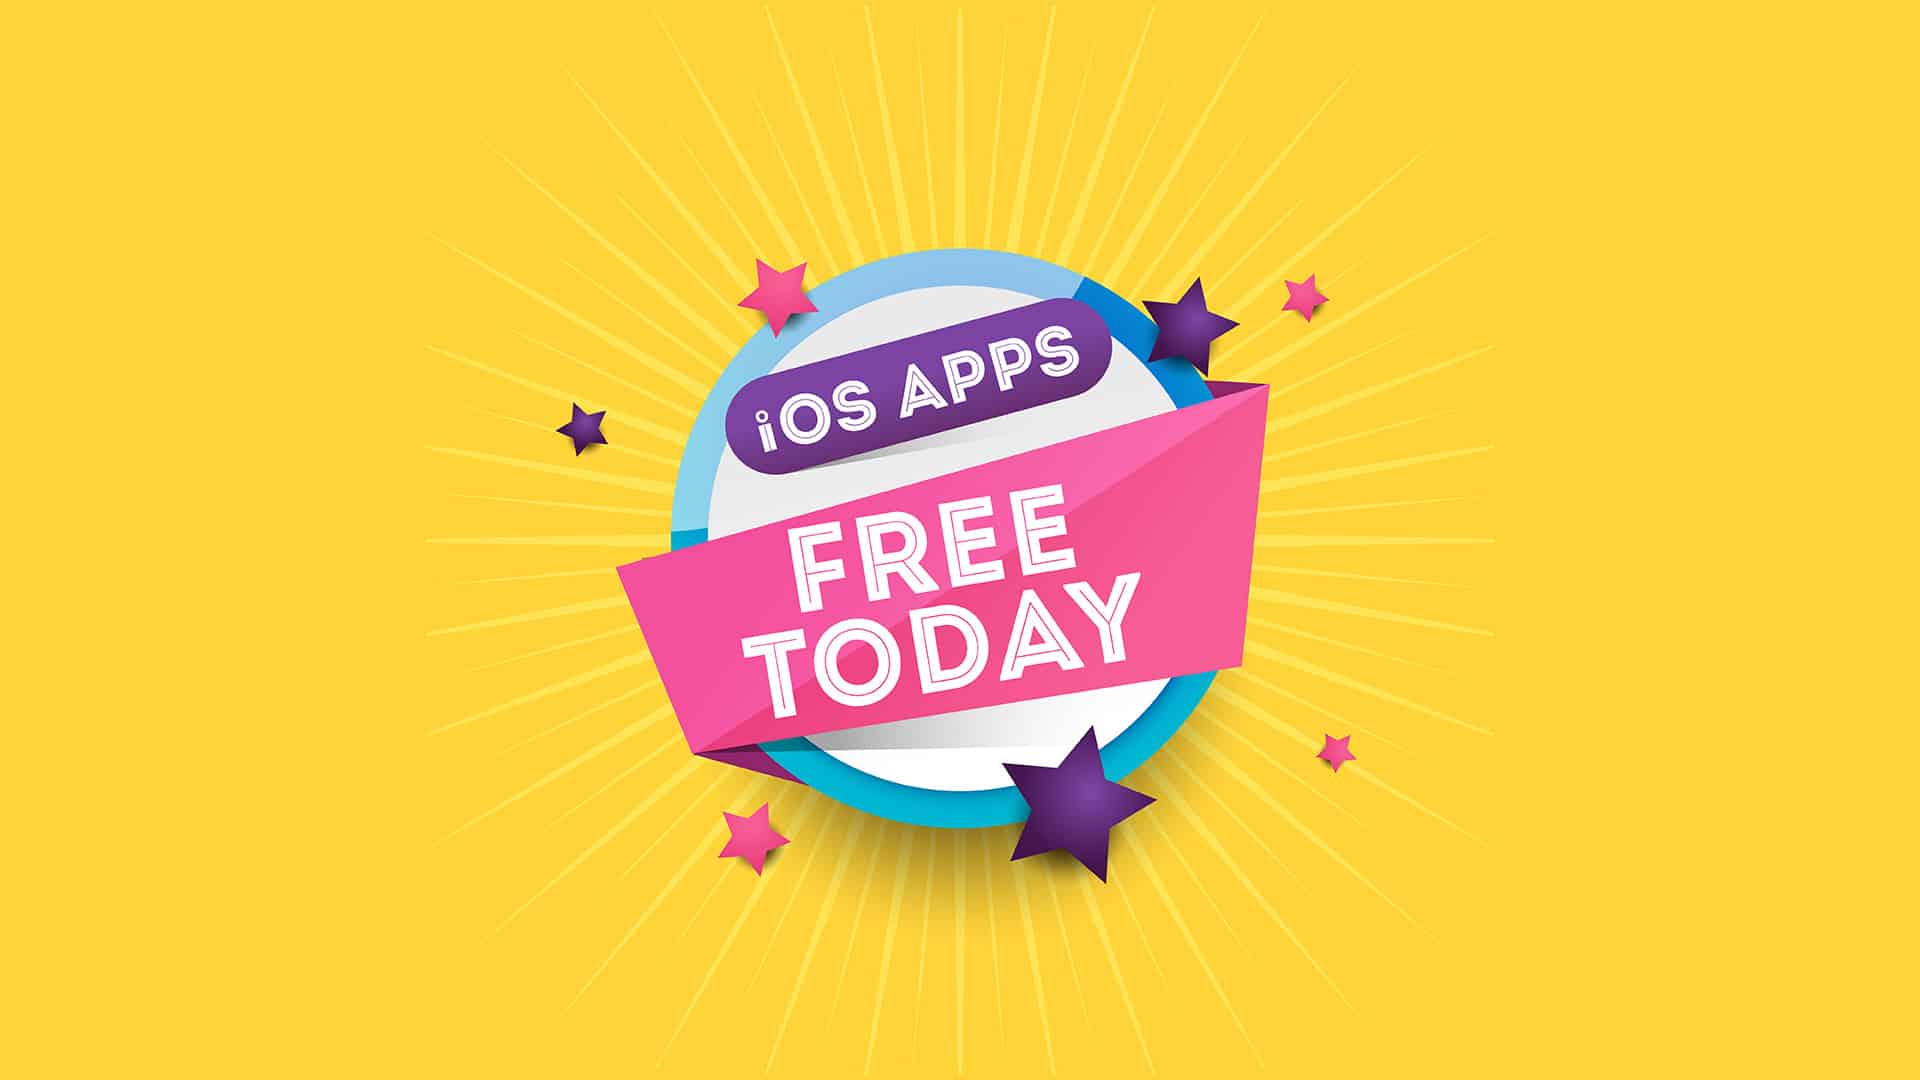 تطبيقات وألعاب مدفوعة يمكن لمستخدمي آيفون الحصول عليها مجانًا